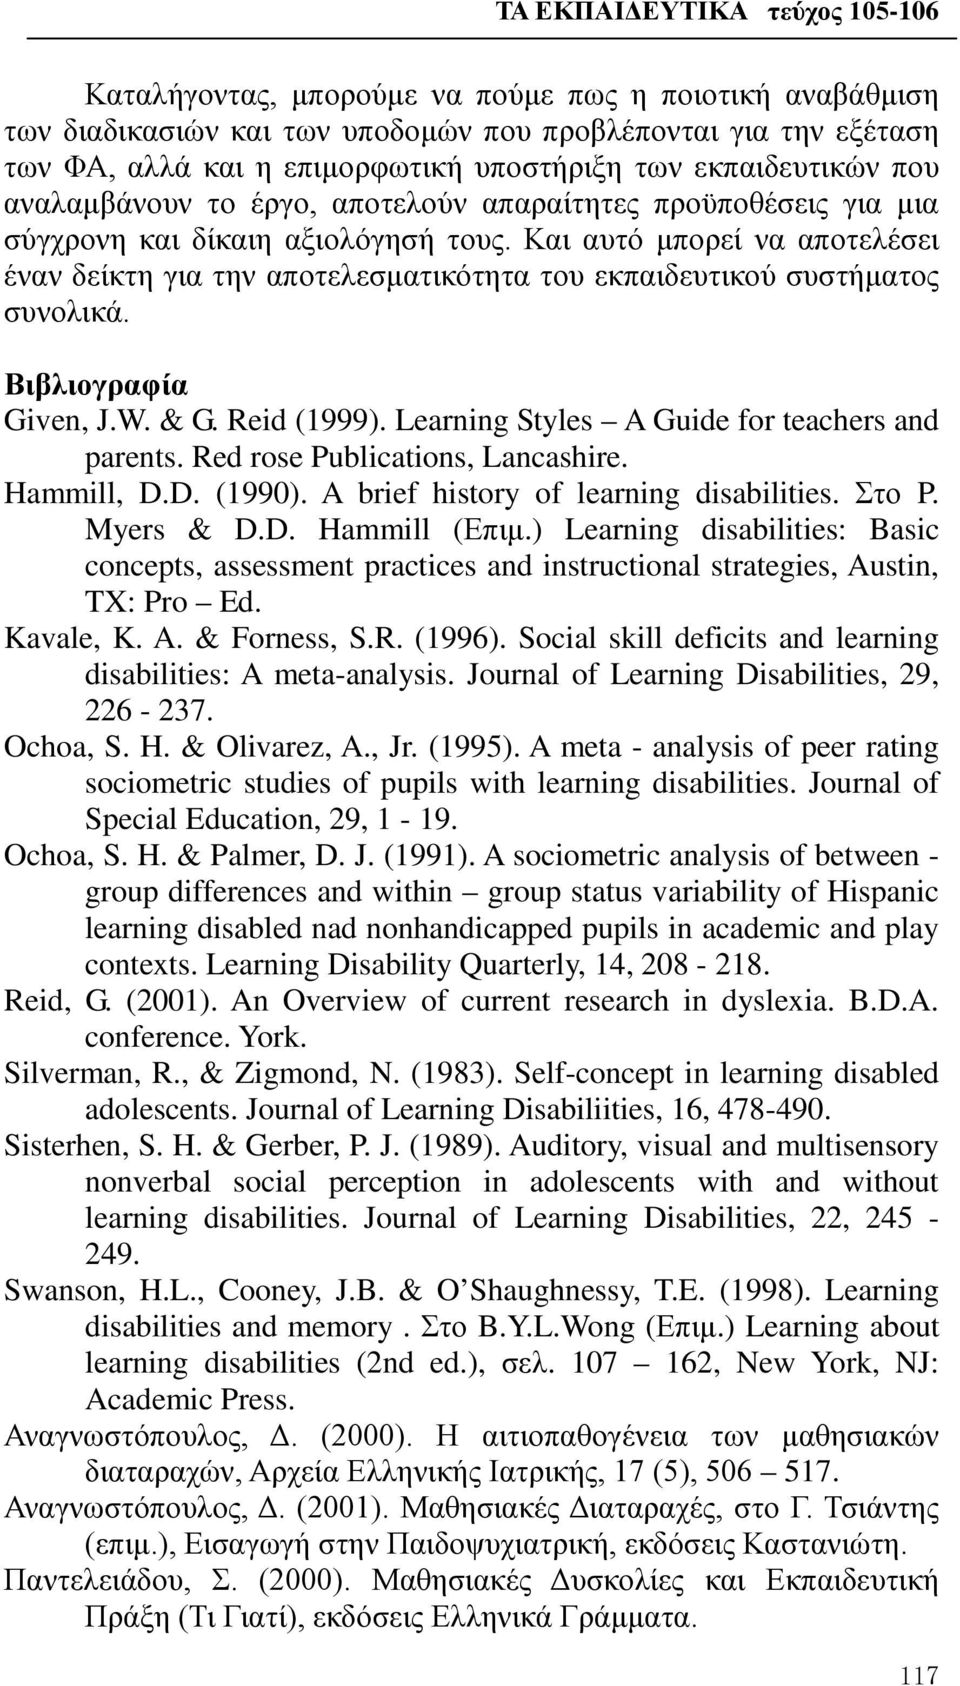 Και αυτό μπορεί να αποτελέσει έναν δείκτη για την αποτελεσματικότητα του εκπαιδευτικού συστήματος συνολικά. Βιβλιογραφία Given, J.W. & G. Reid (1999). Learning Styles A Guide for teachers and parents.